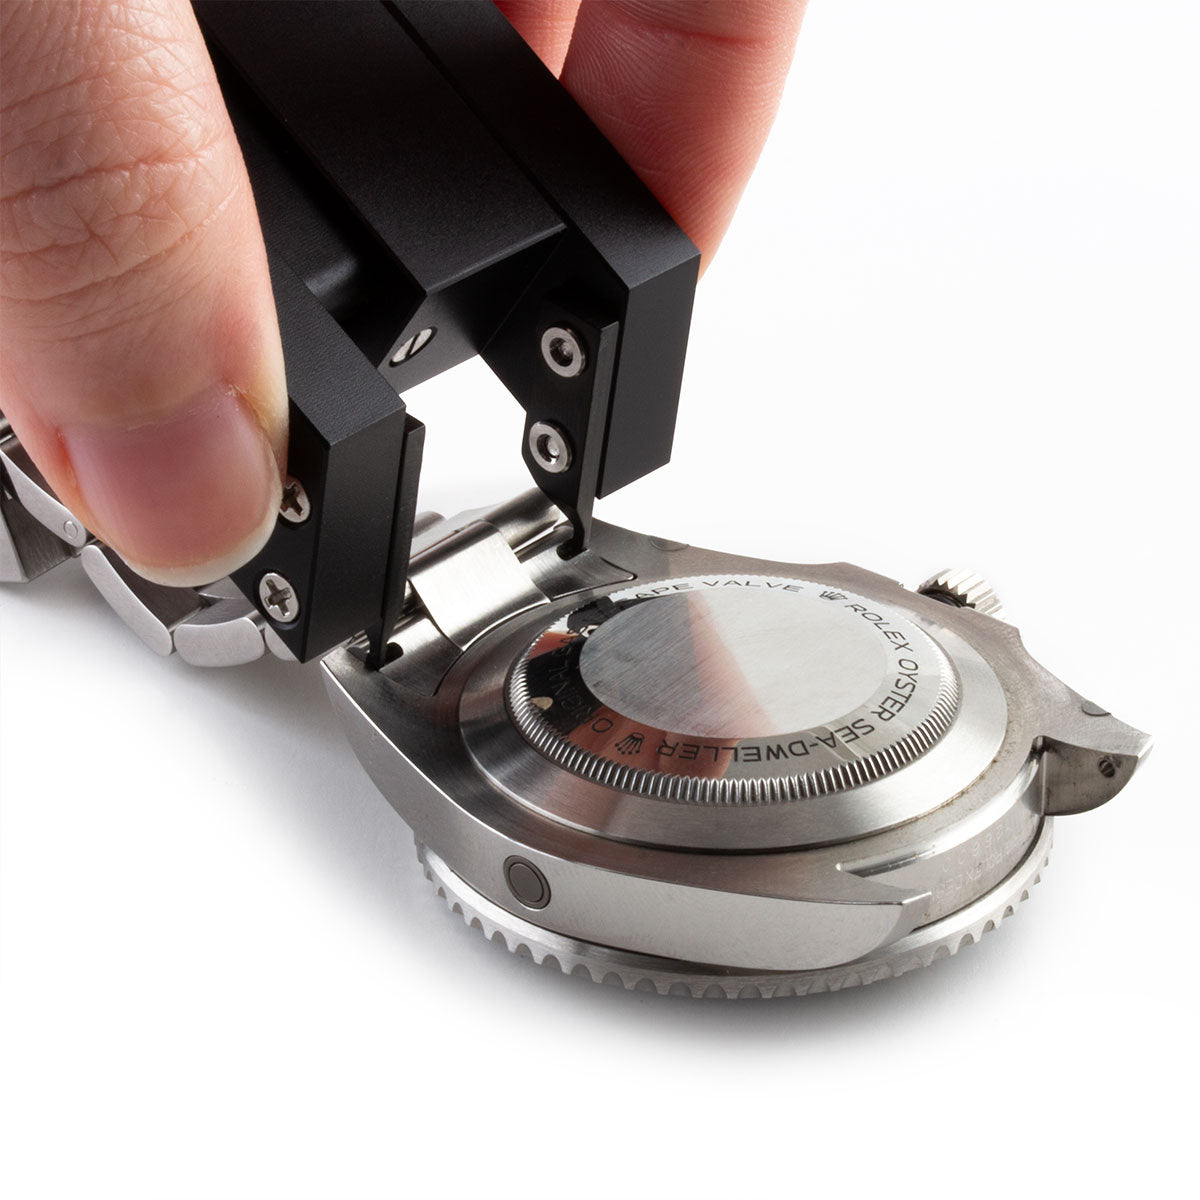 Ergonomic tweezers for Rolex metal / leather watch bands